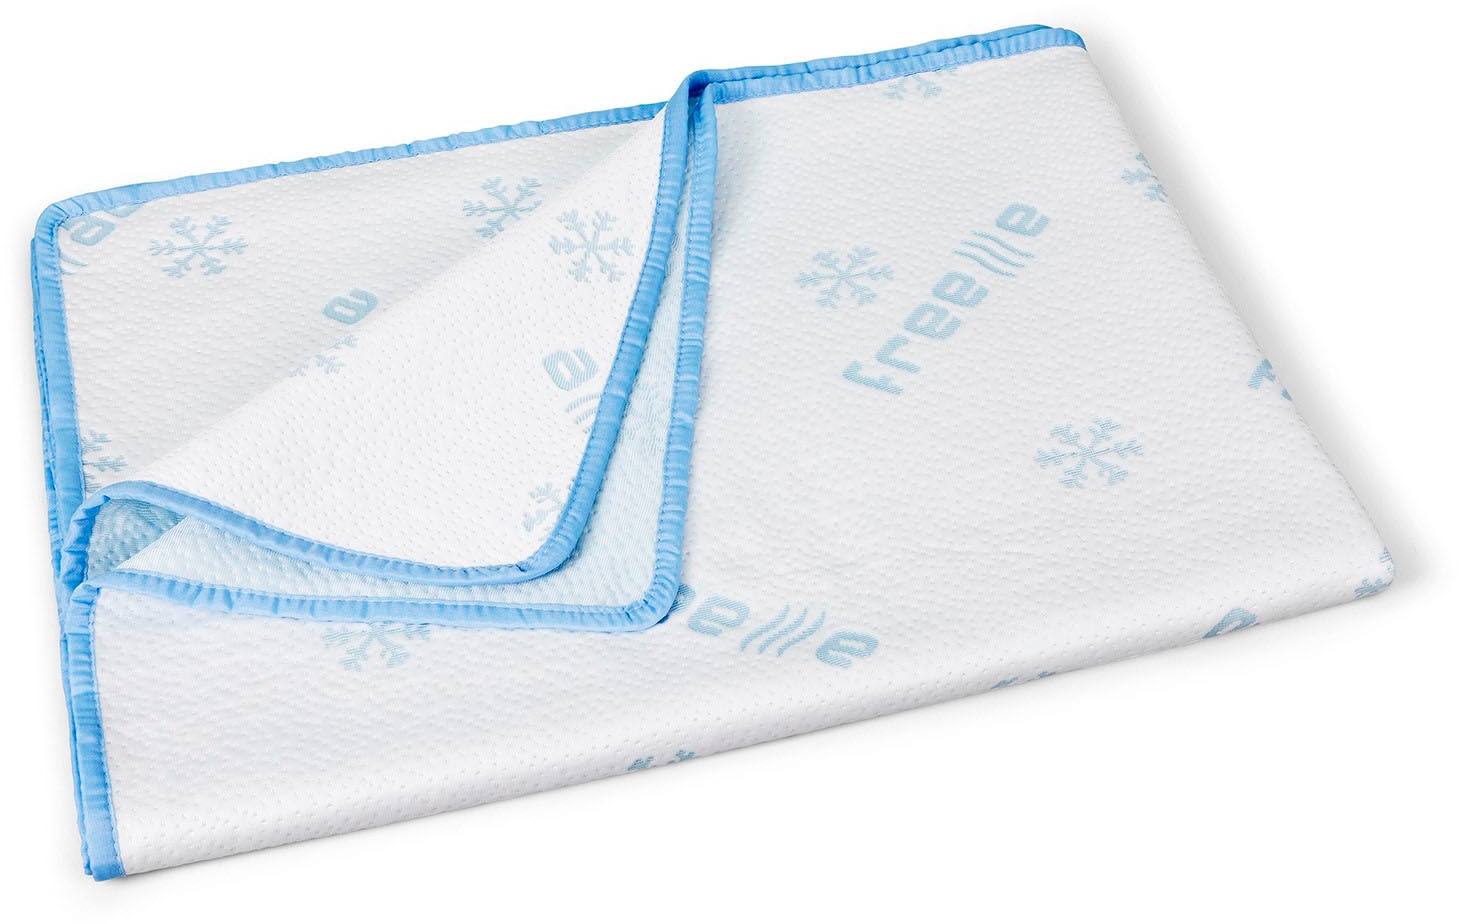 DI QUATTRO Sommerbettdecke »Freeze«, leicht, (1 St.), kühlende Bettdecke, 135x200 cm, ideal für die heissen Sommermonate